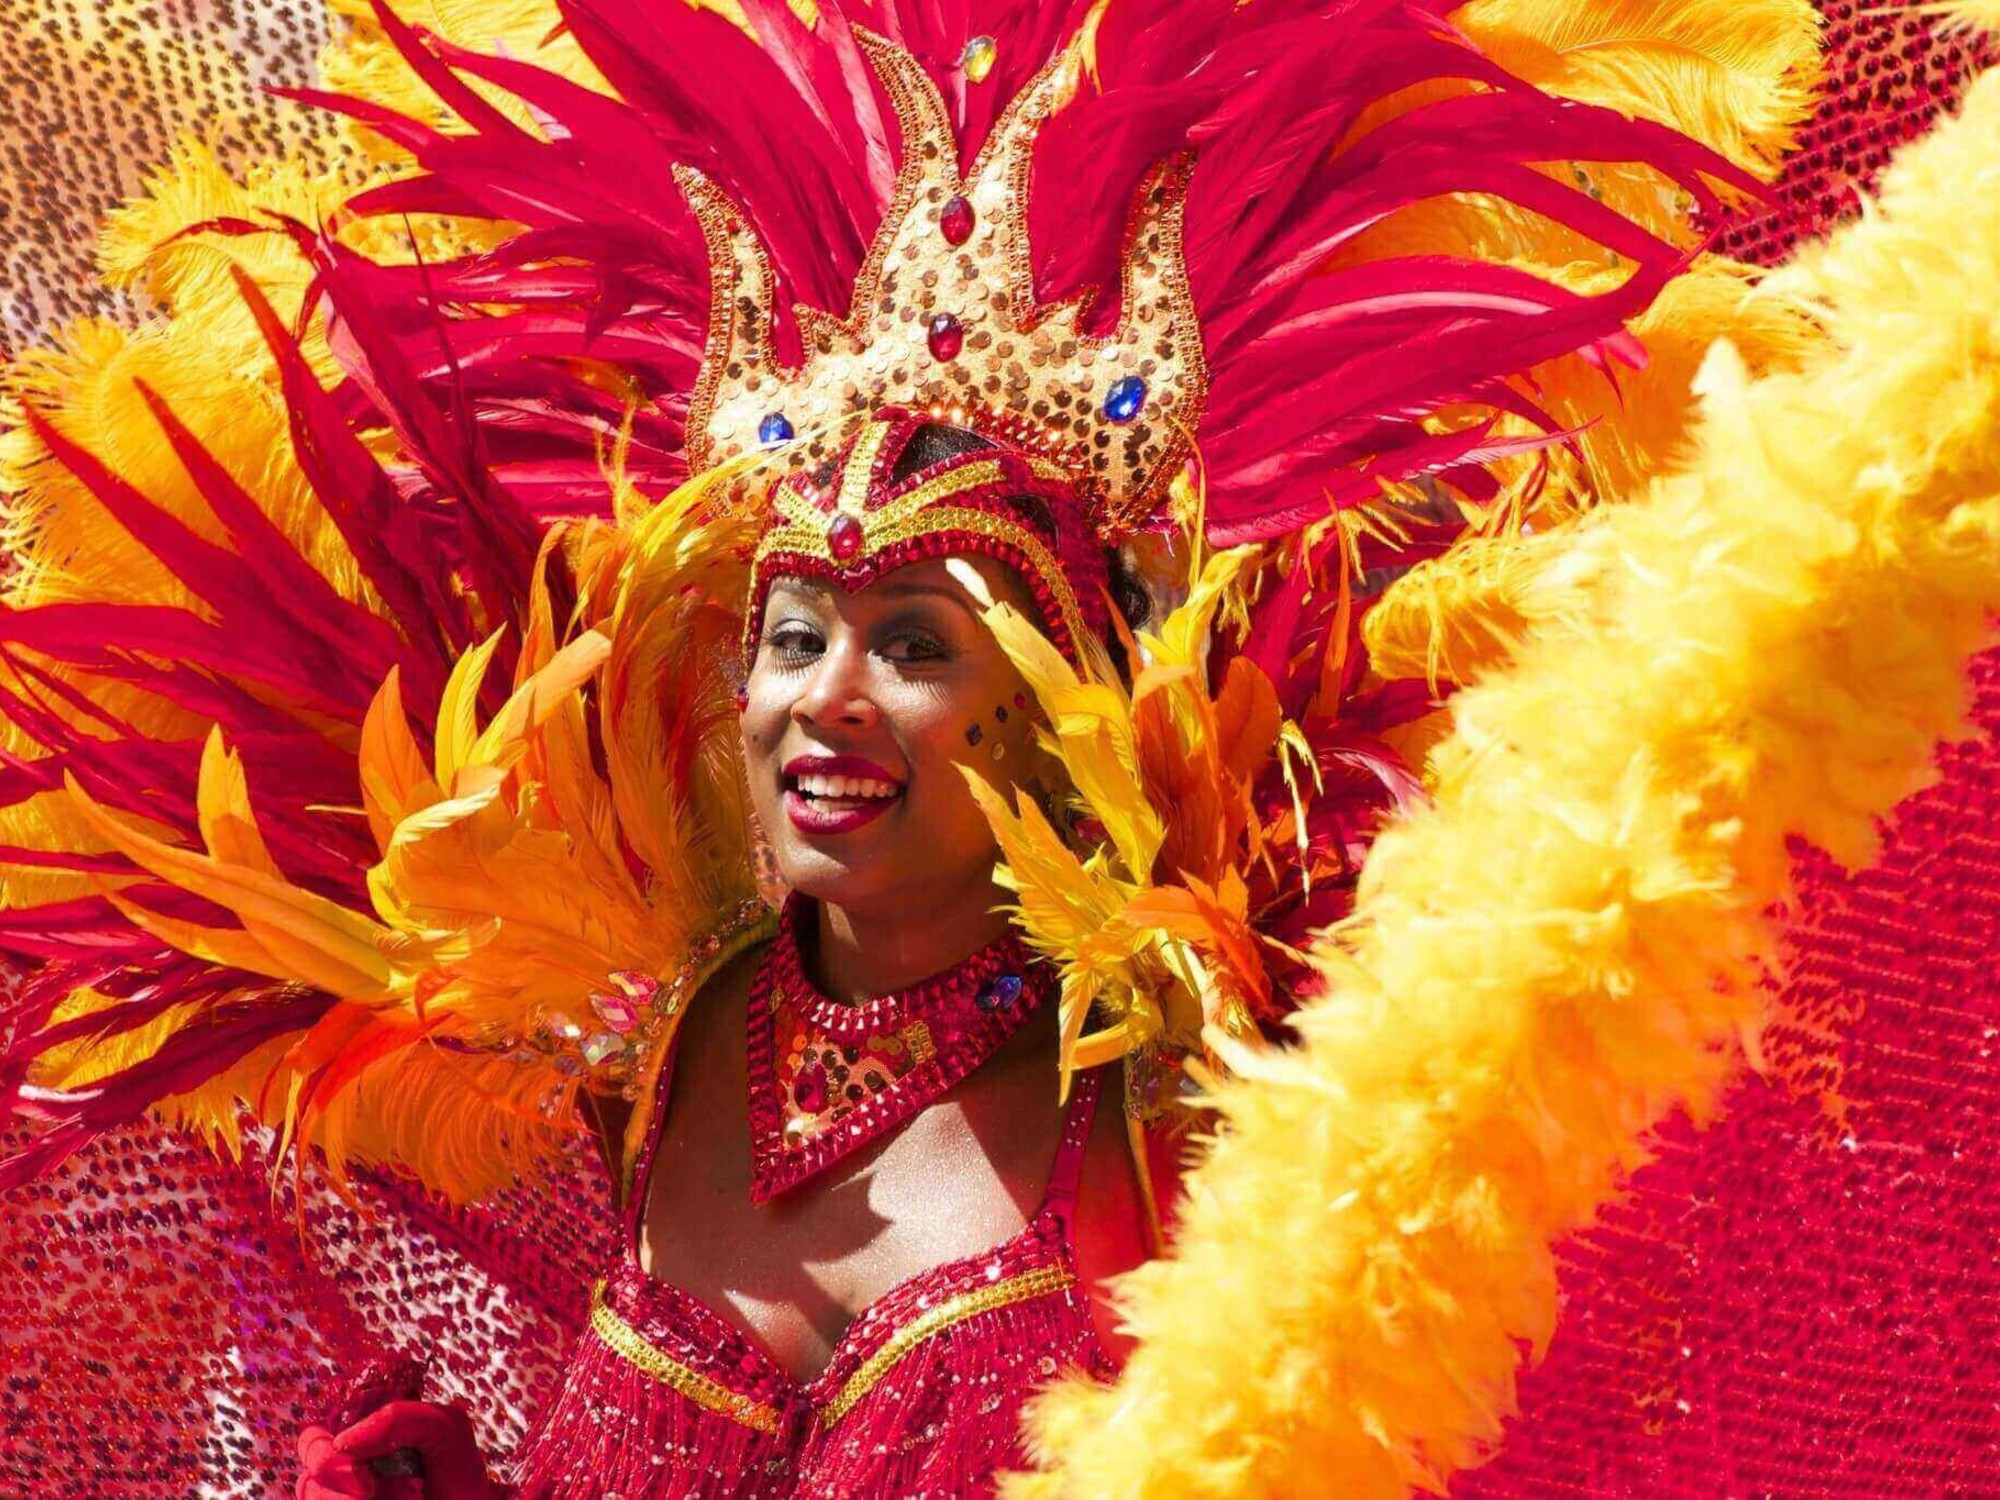 Blog - De elfde van de elfde; wat is eigenlijk waarom vieren we het? - e-Carnavalskleding